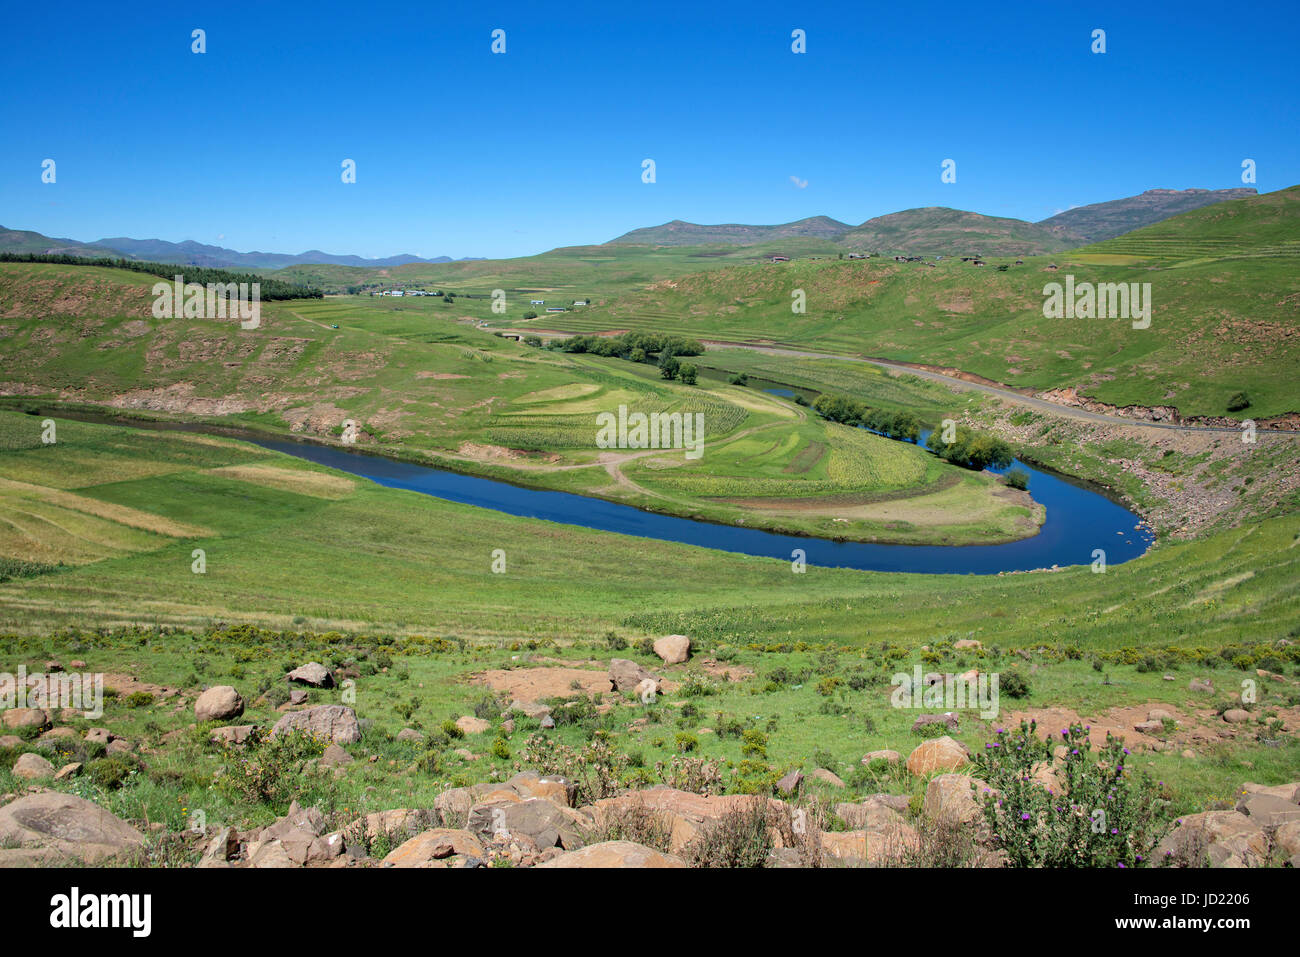 Paysage rural et Maletsunyane River District de Maseru Lesotho Afrique du Sud Banque D'Images